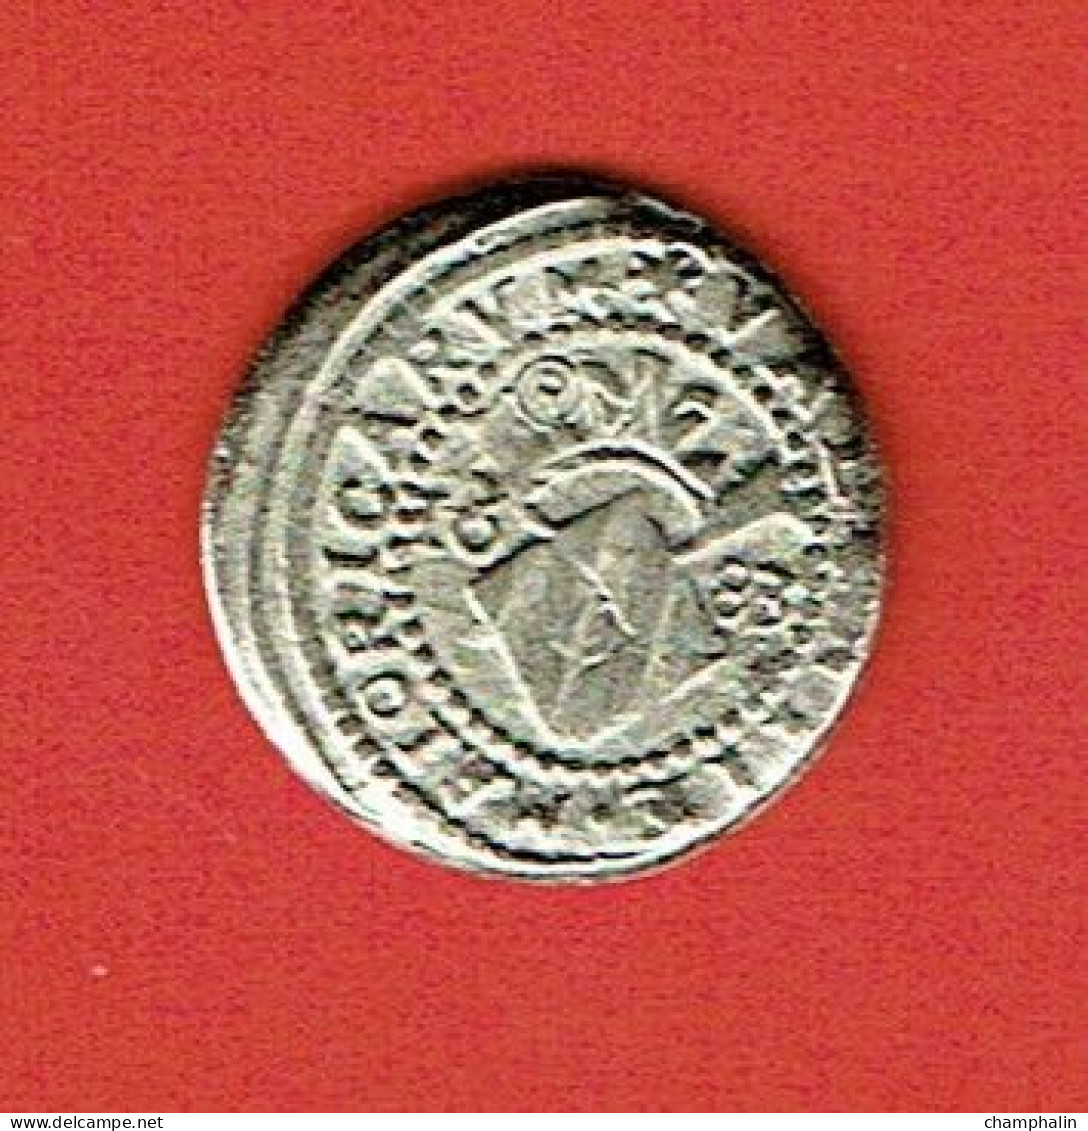 Espagne - Reproduction Monnaie - 1 Real Plata - Valencia 1683 - Charles II L'Ensorcelé (1665-1700) - Monnaies Provinciales